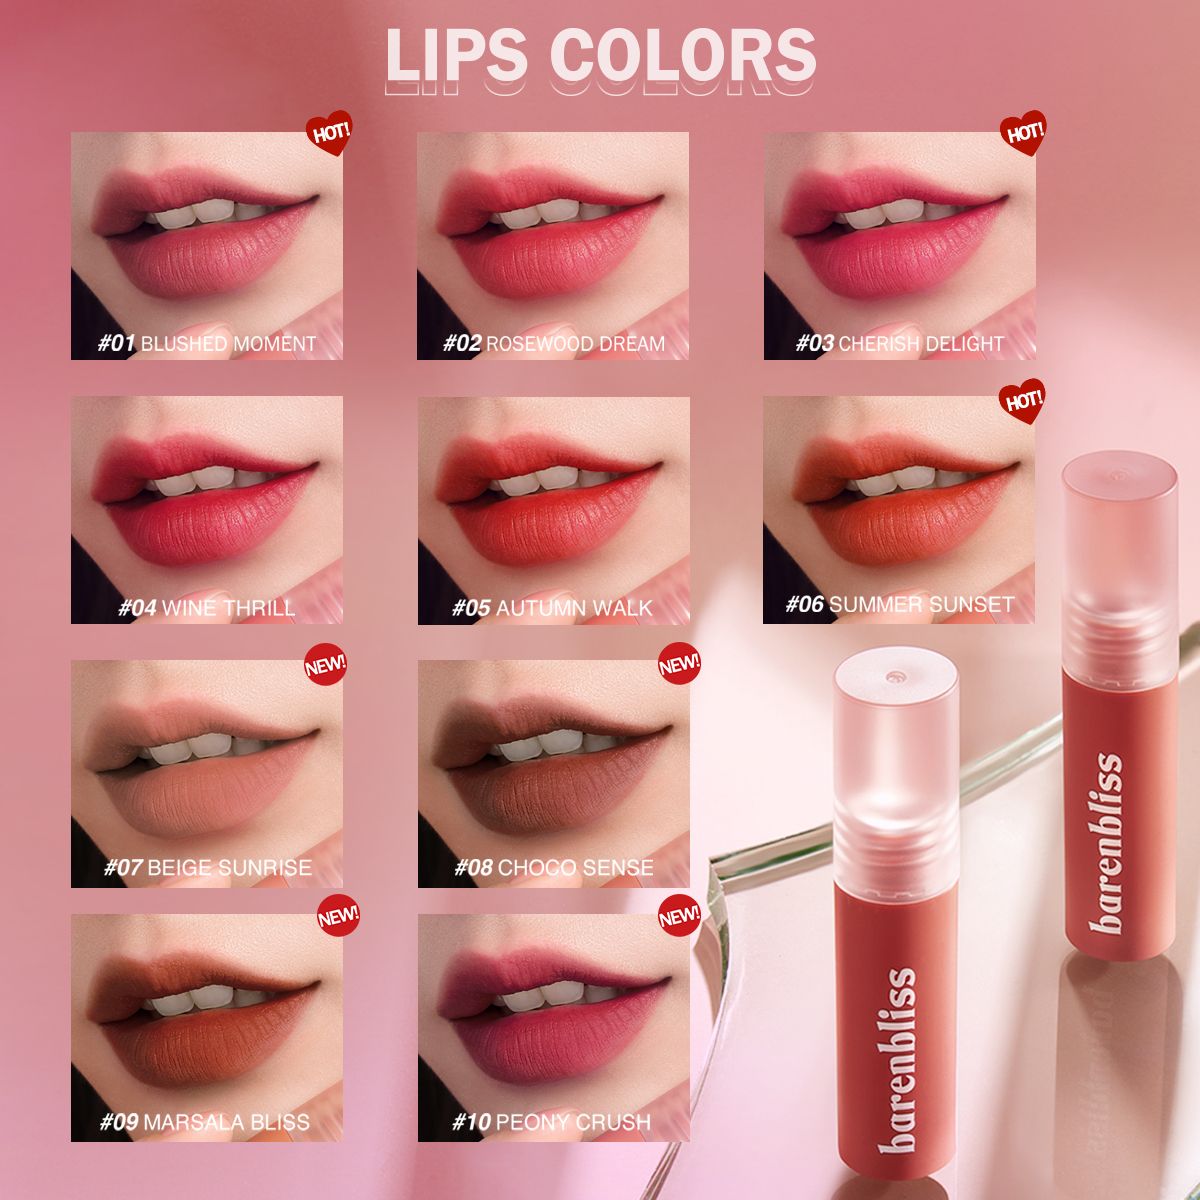 Shades cantik barenbliss Lip Velvet, nantikan 4 shade terbarunya pada bulan ini.